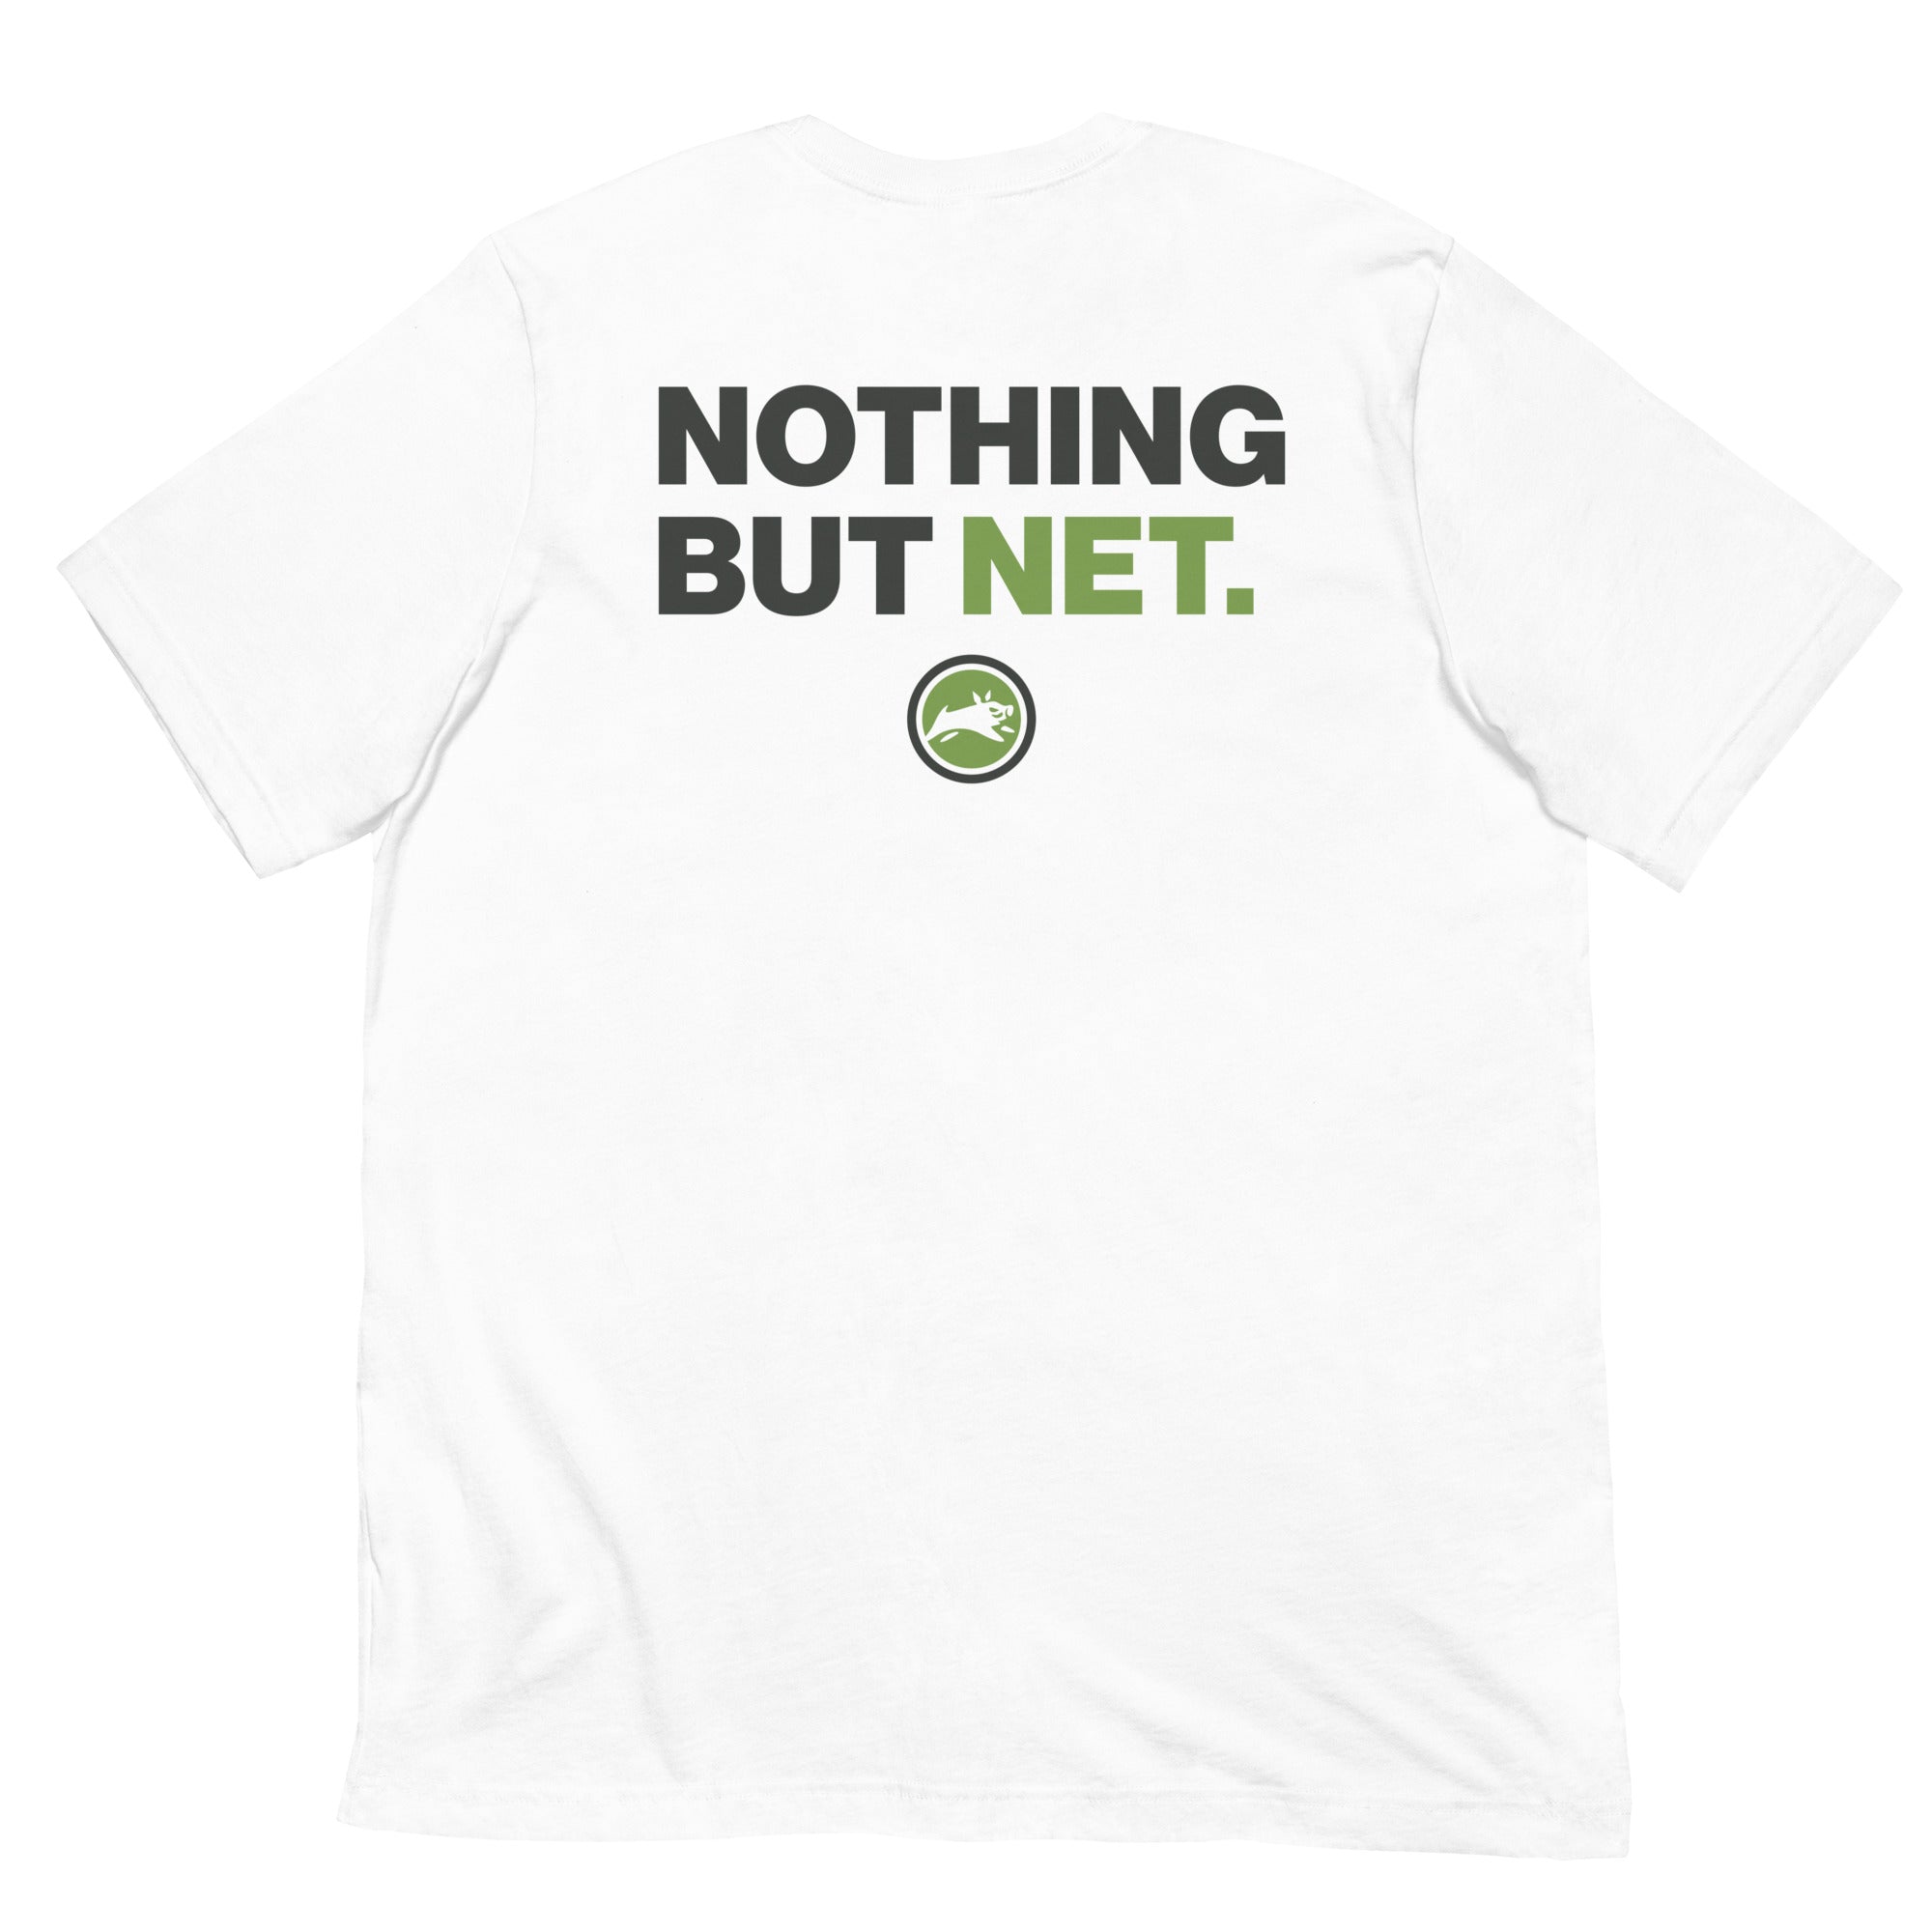 Nothing But Net. - Short-Sleeve Unisex T-Shirt